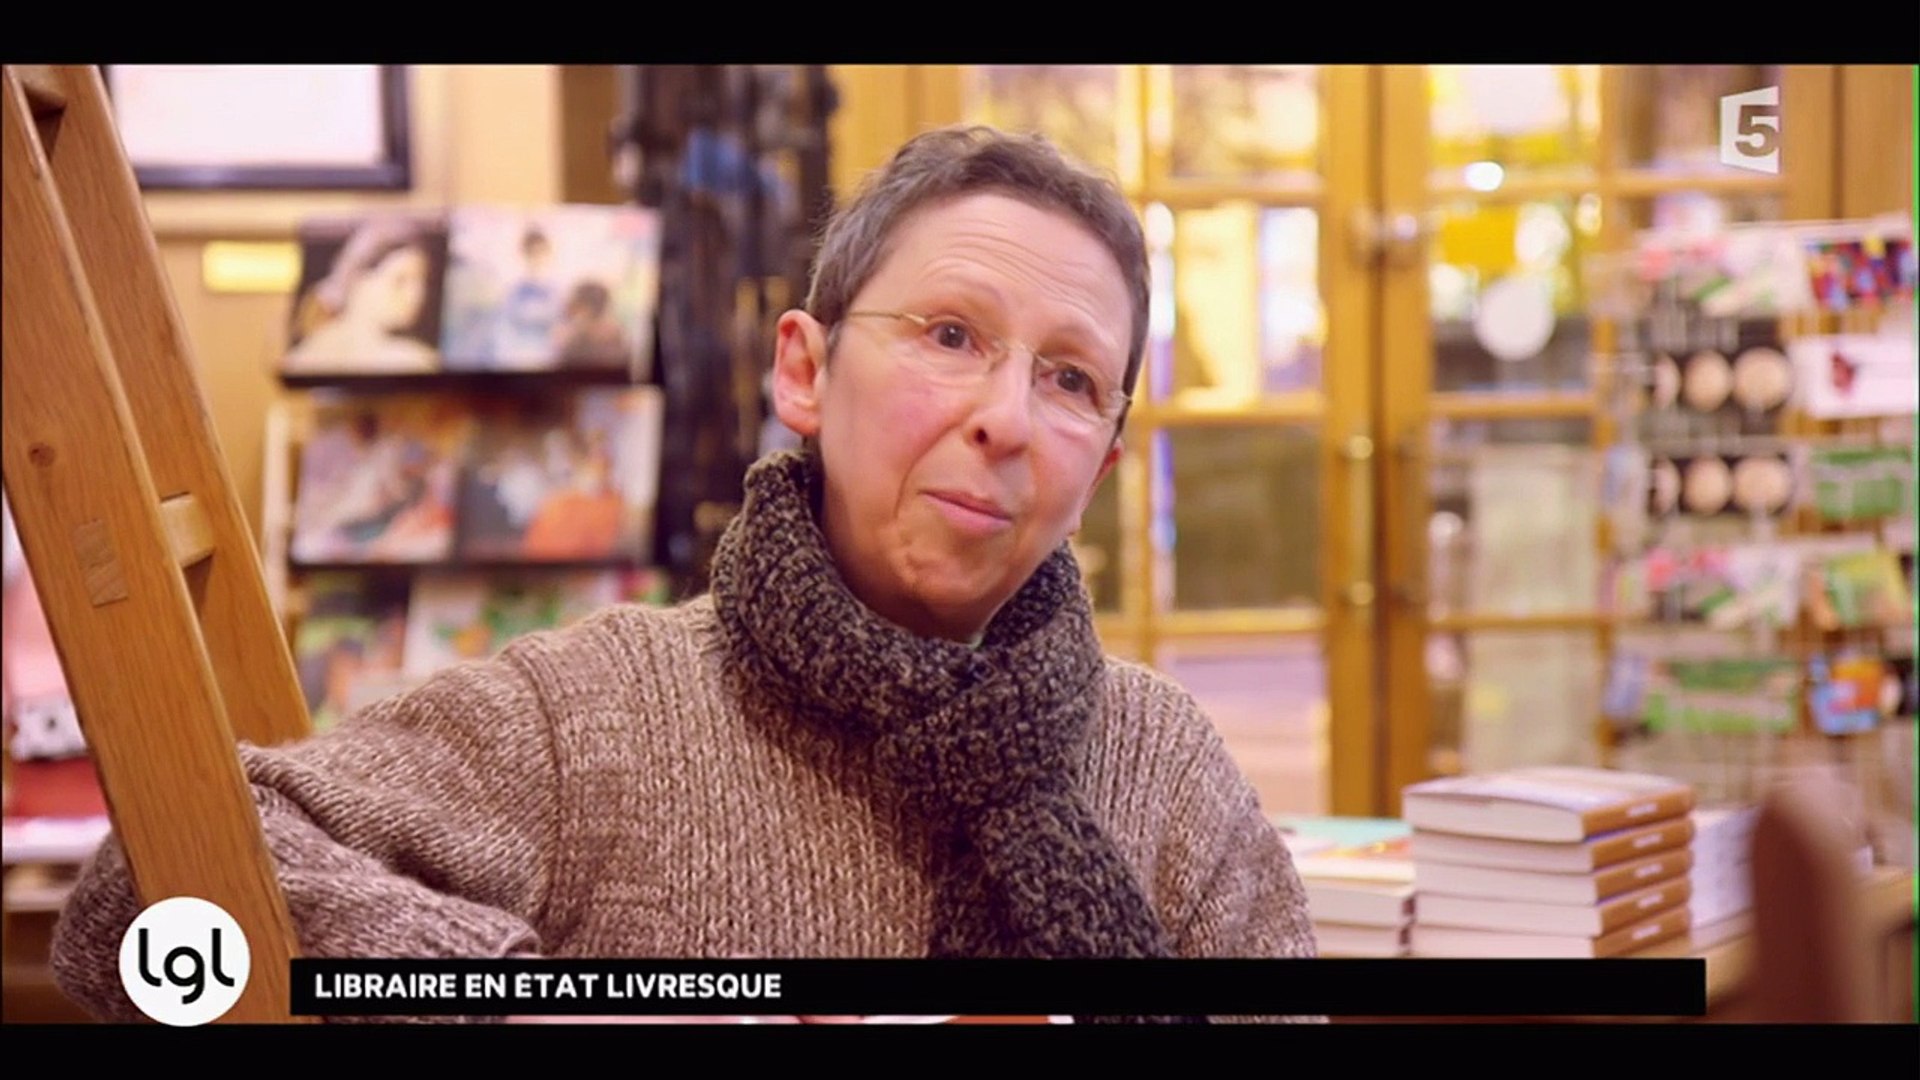 Entrez dans la Librairie Antipodes à Enghien-les-Bains - Vidéo Dailymotion